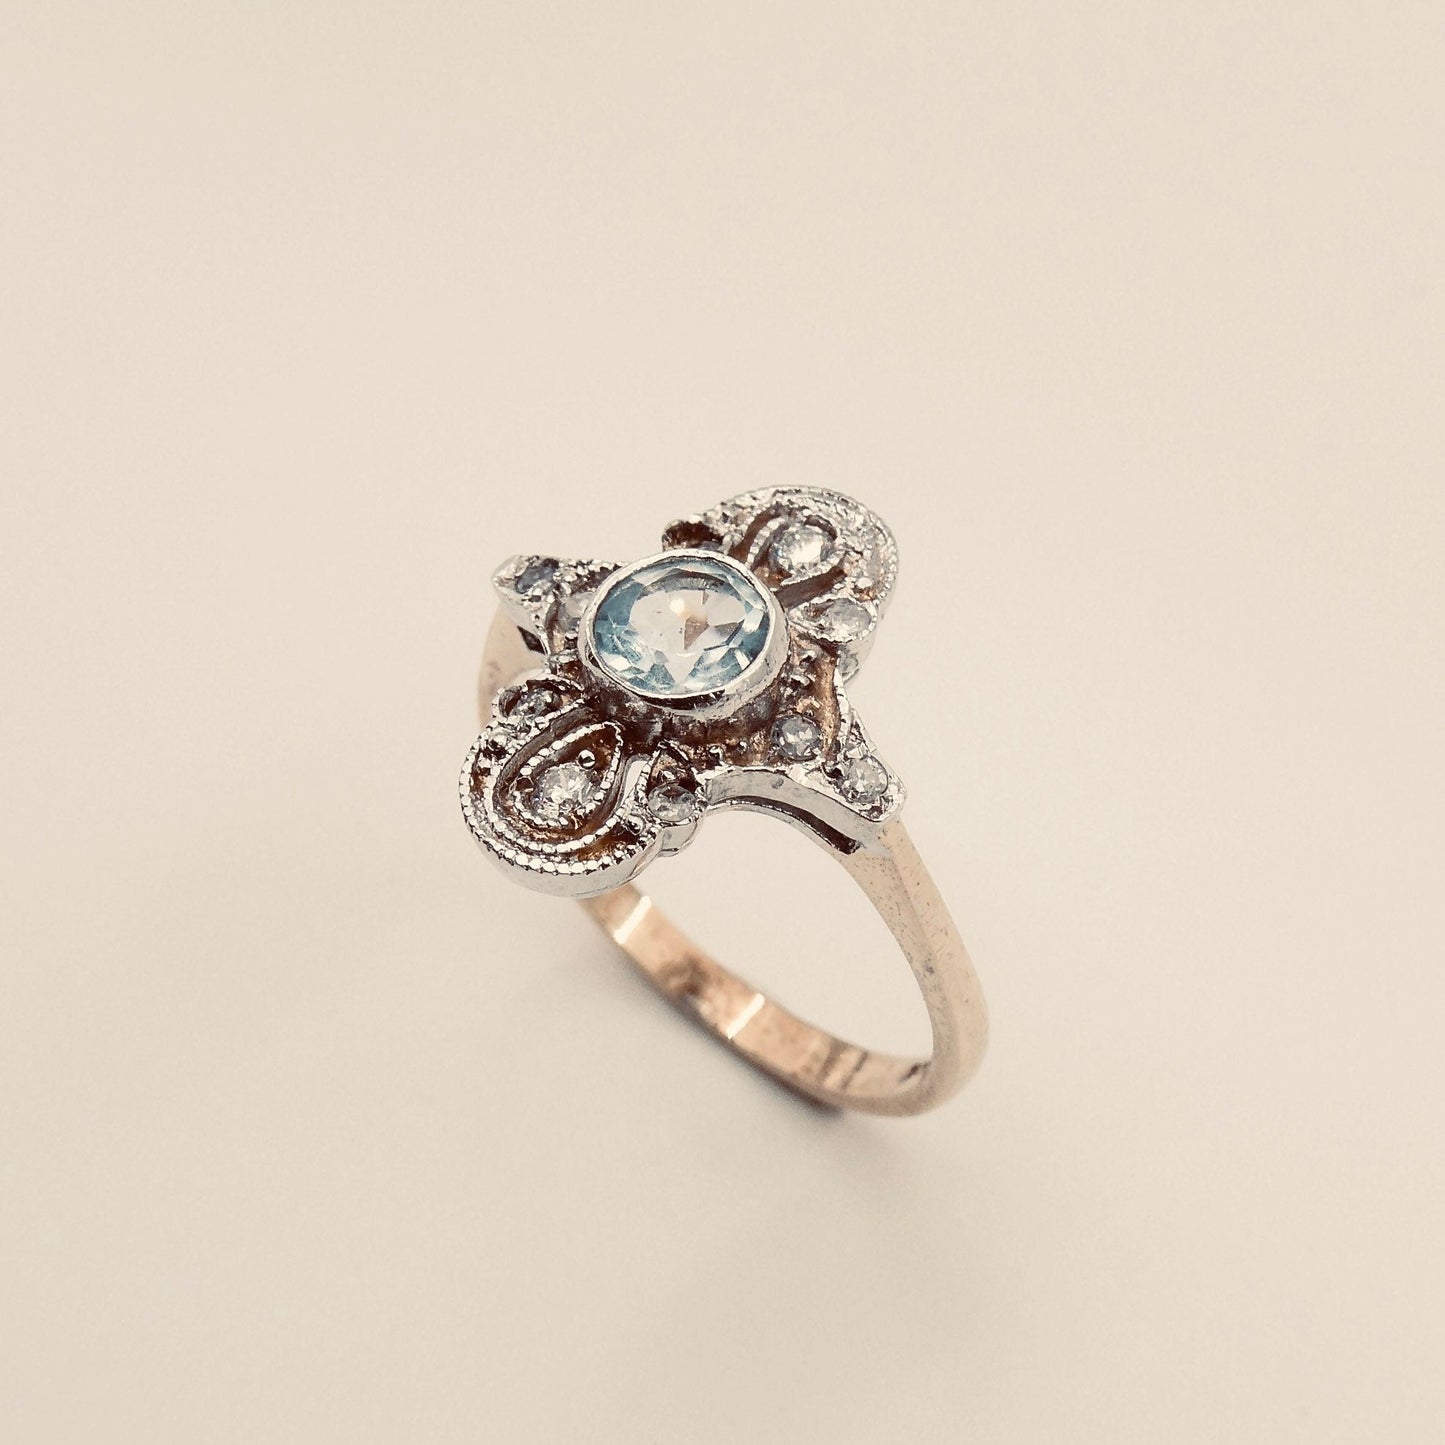 Art Deco style aquamarine ring with diamonds, elegant diamond aquamarine ring. - Collected